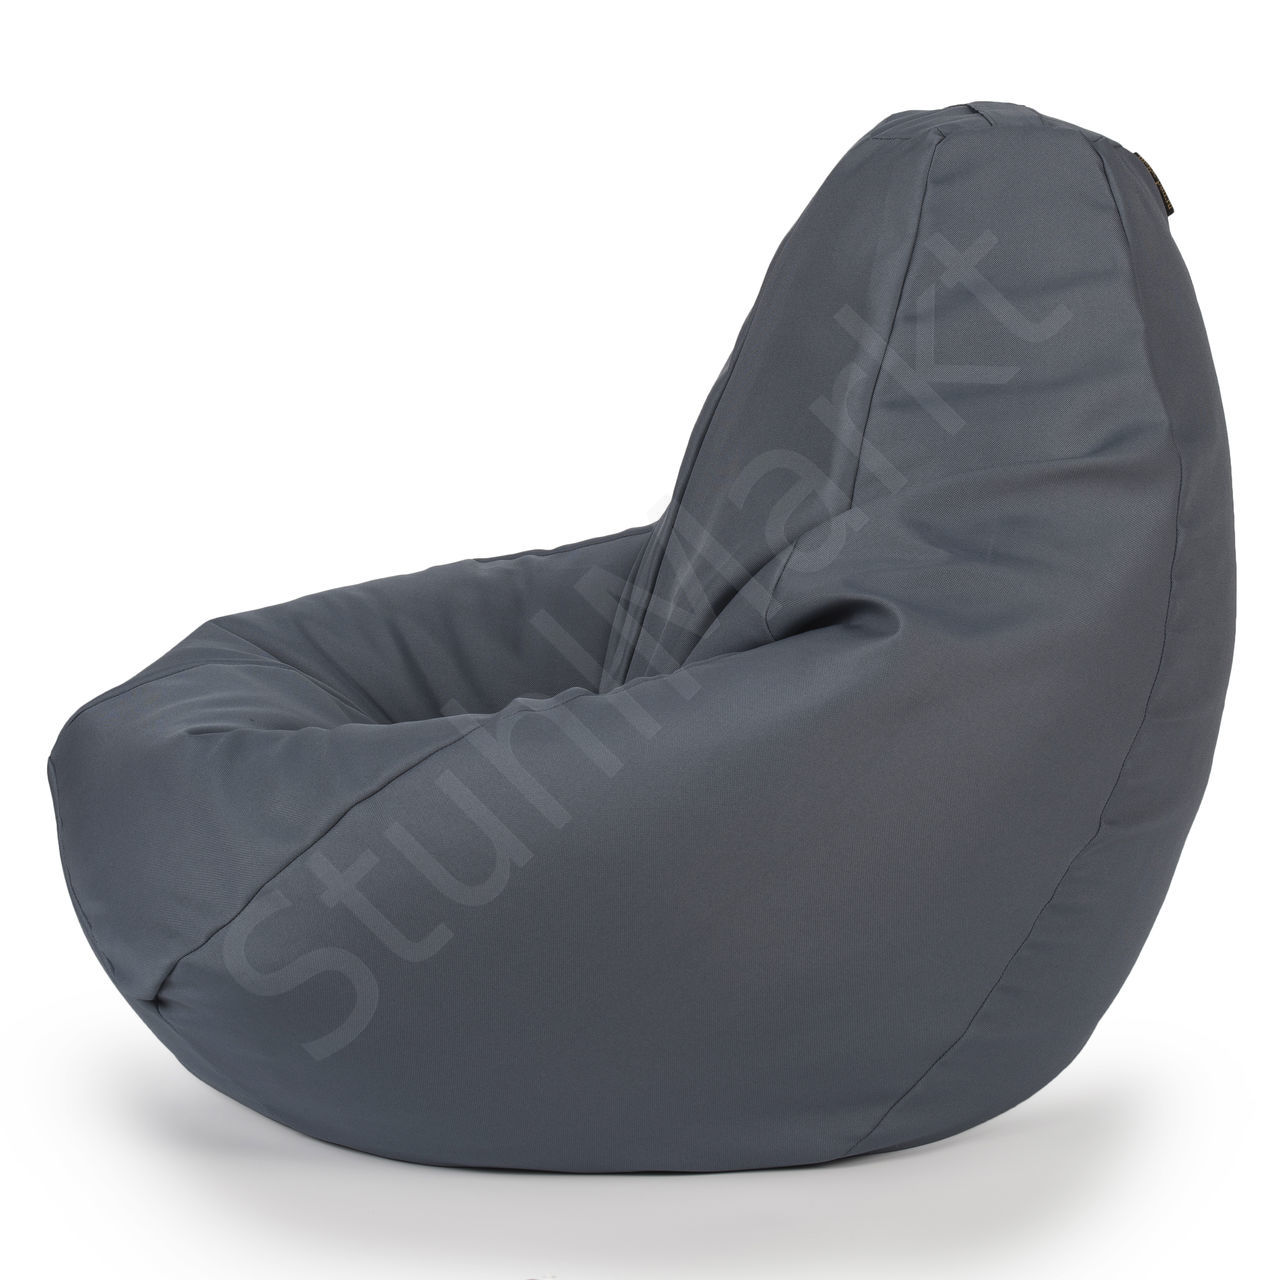  Бескаркасное кресло-мешок Mira Grey XL 6752